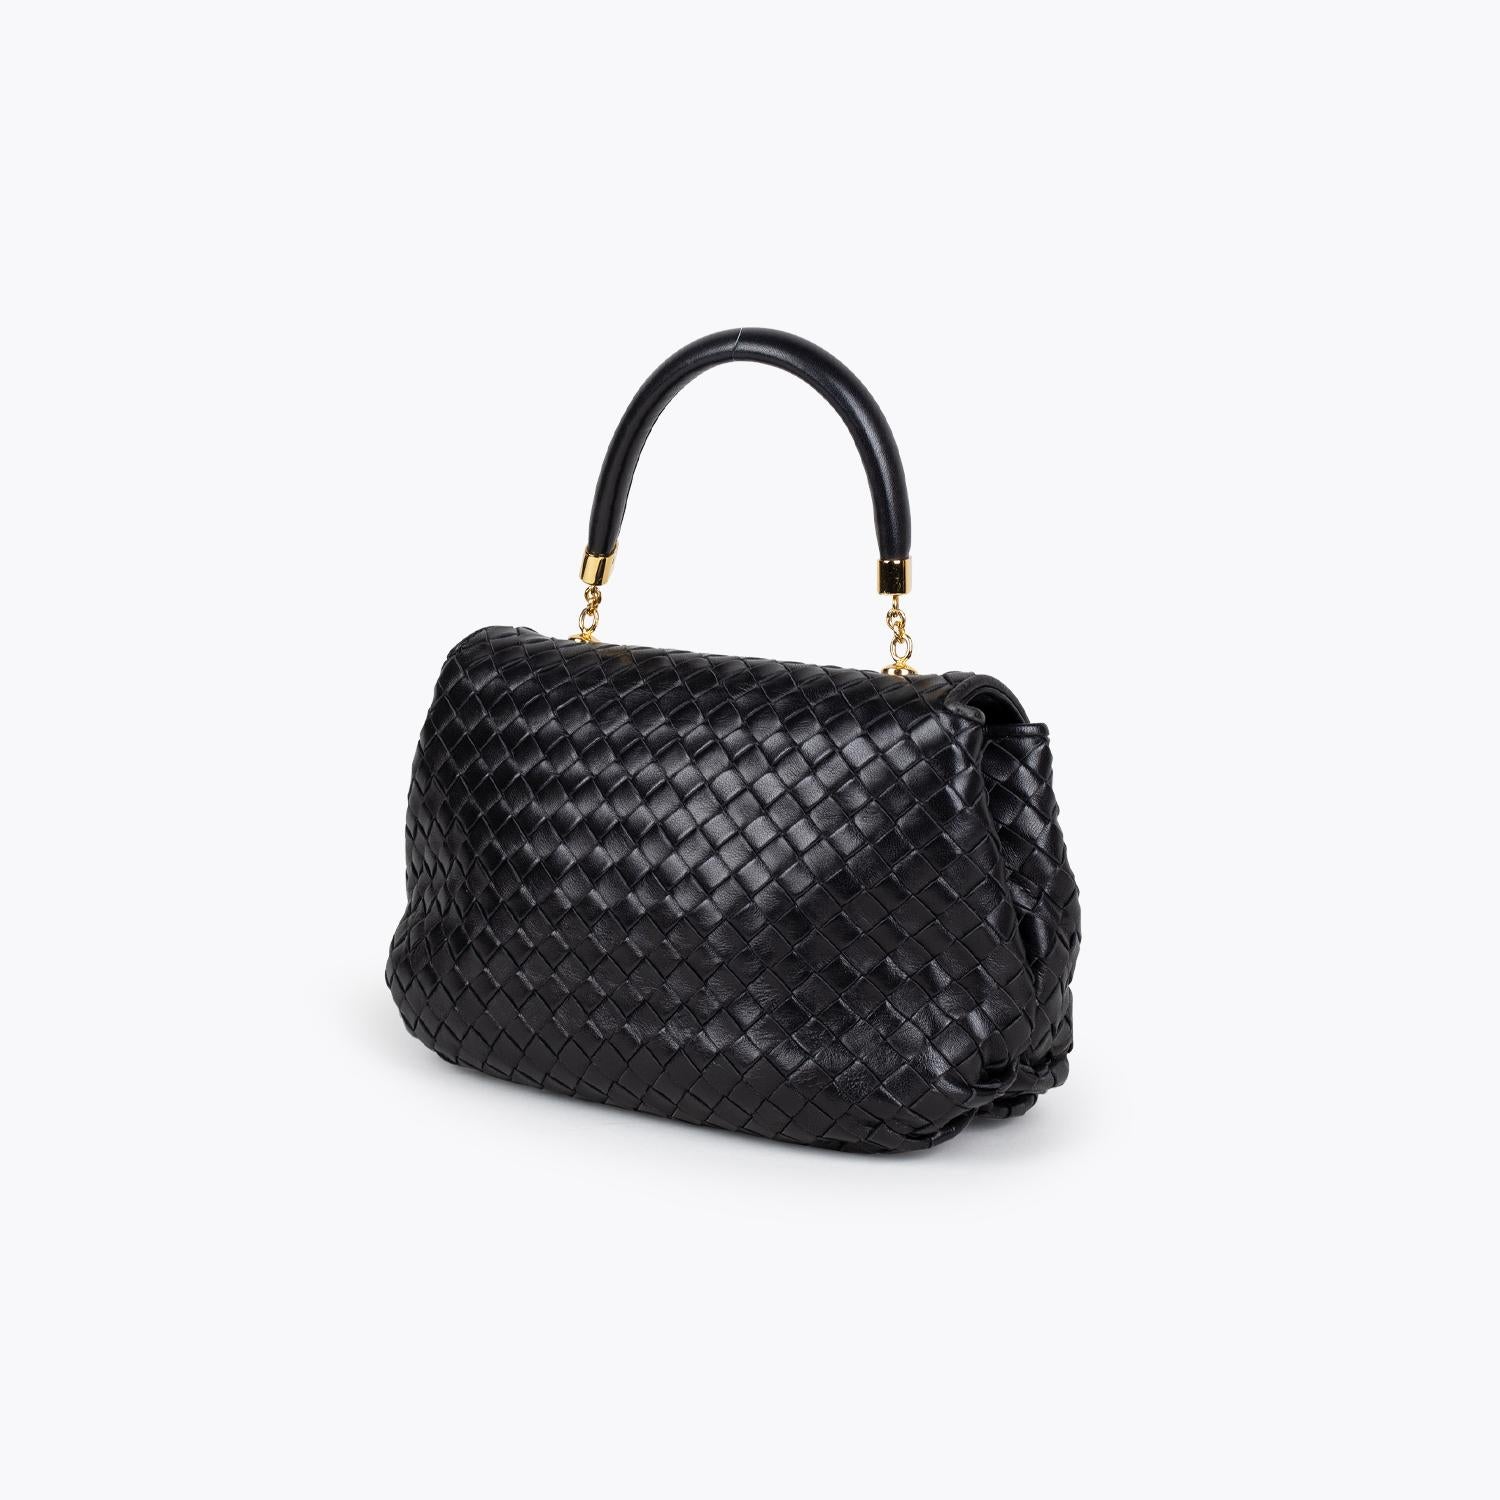 Black Intrecciato Nappa Leather Bottega Veneta Top Crossbody Bag In Good Condition For Sale In Sundbyberg, SE